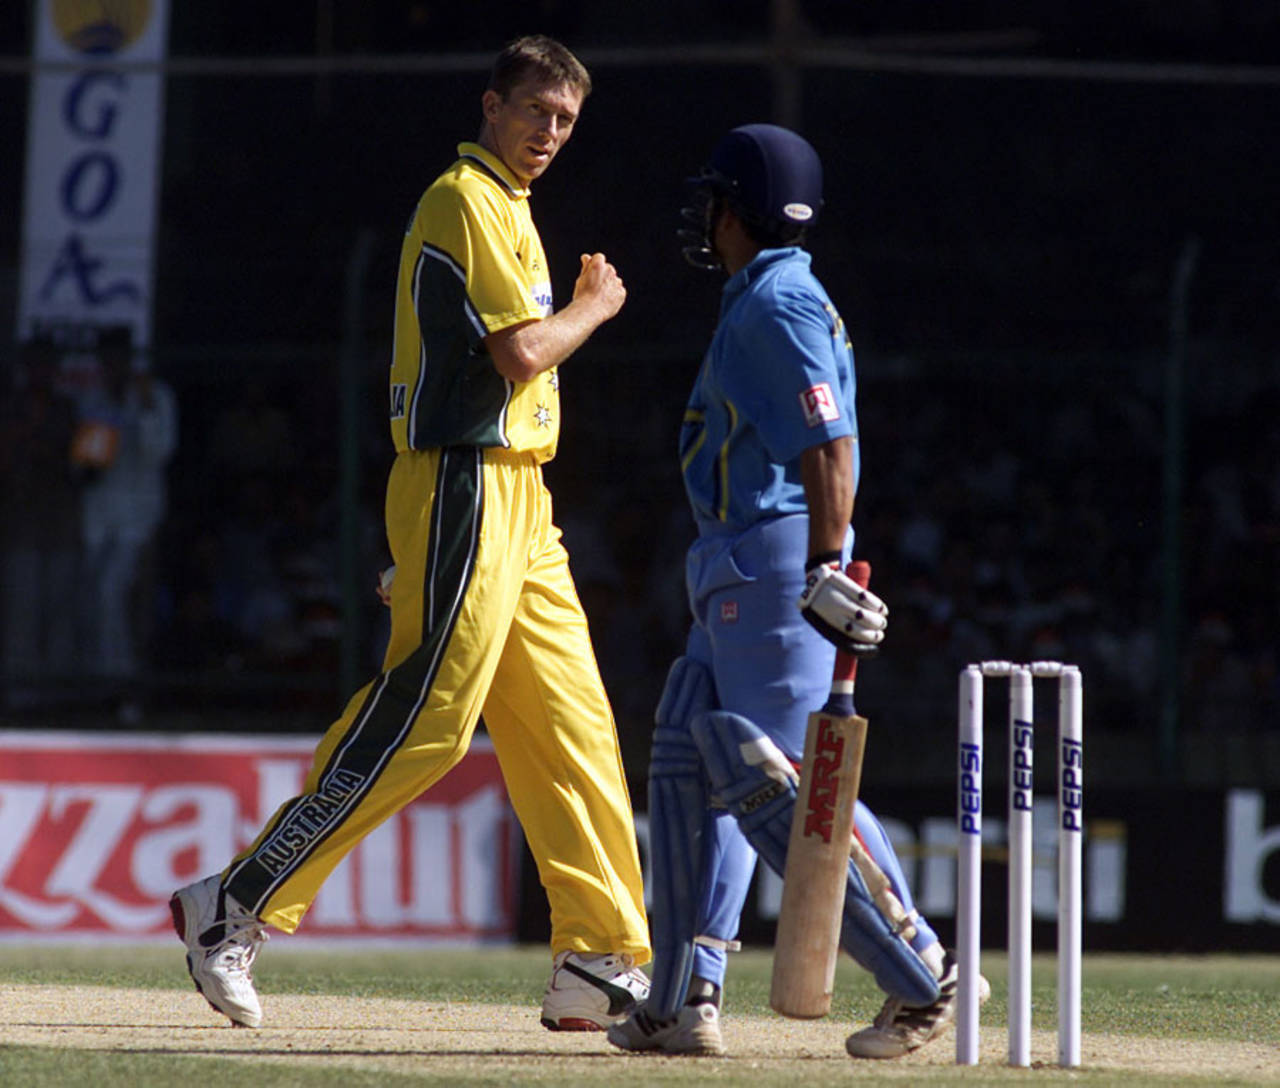 Glen McGrath and Sachin Tendulkar continued their duel into the ODI series&nbsp;&nbsp;&bull;&nbsp;&nbsp;Getty Images